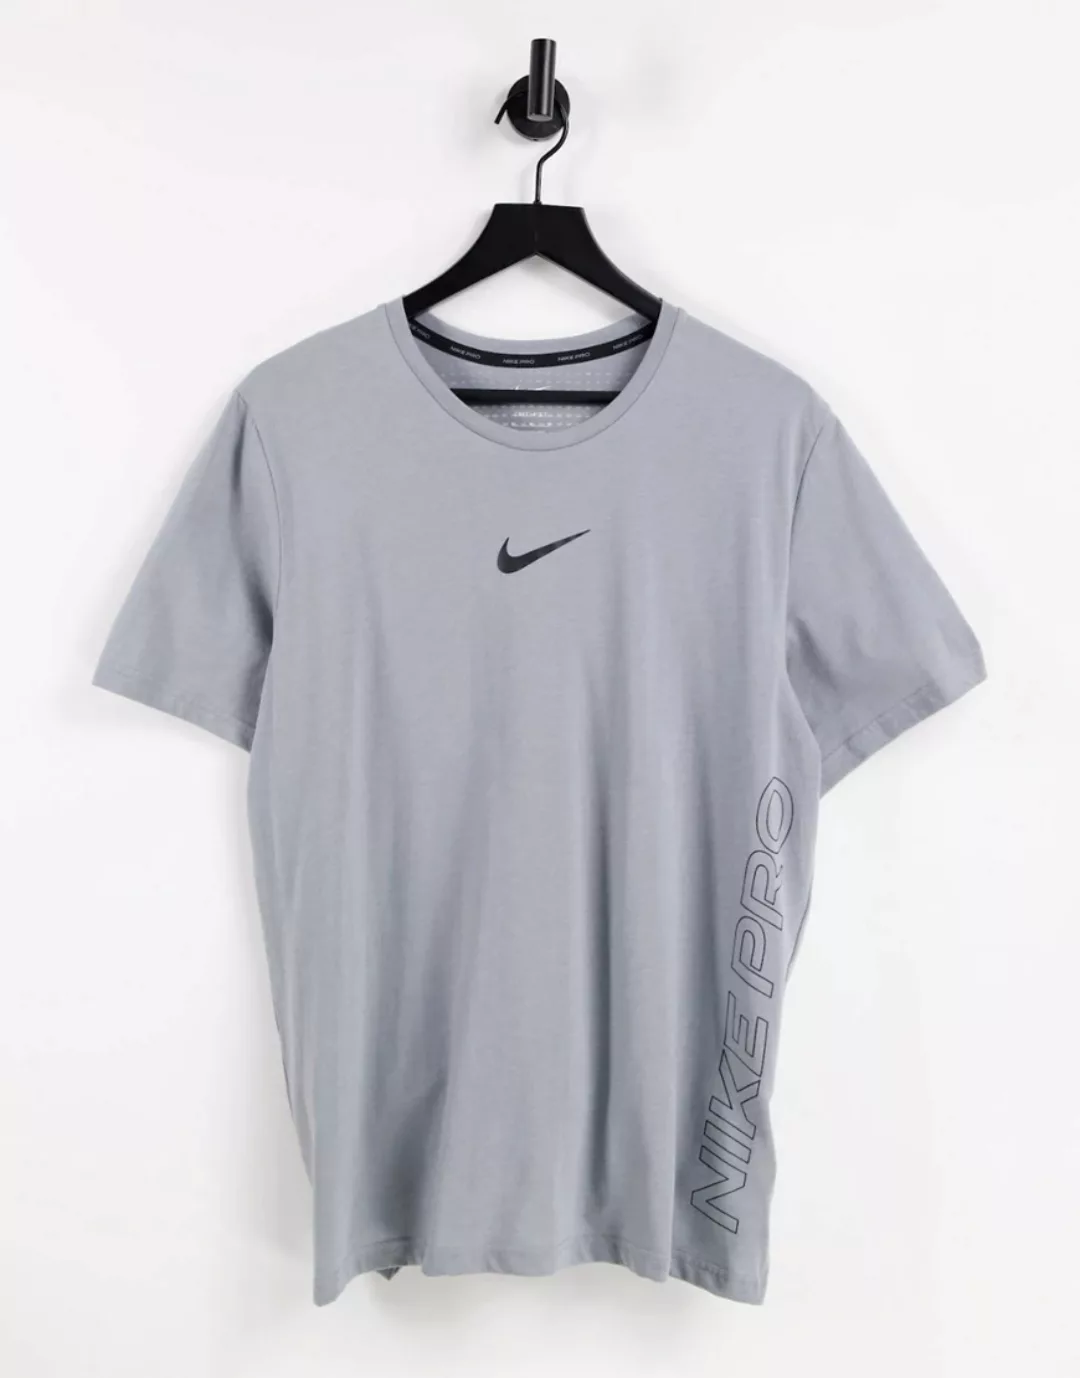 Nike – Pro Training – T-Shirt in Grau mit Ausbrenner-Logo günstig online kaufen